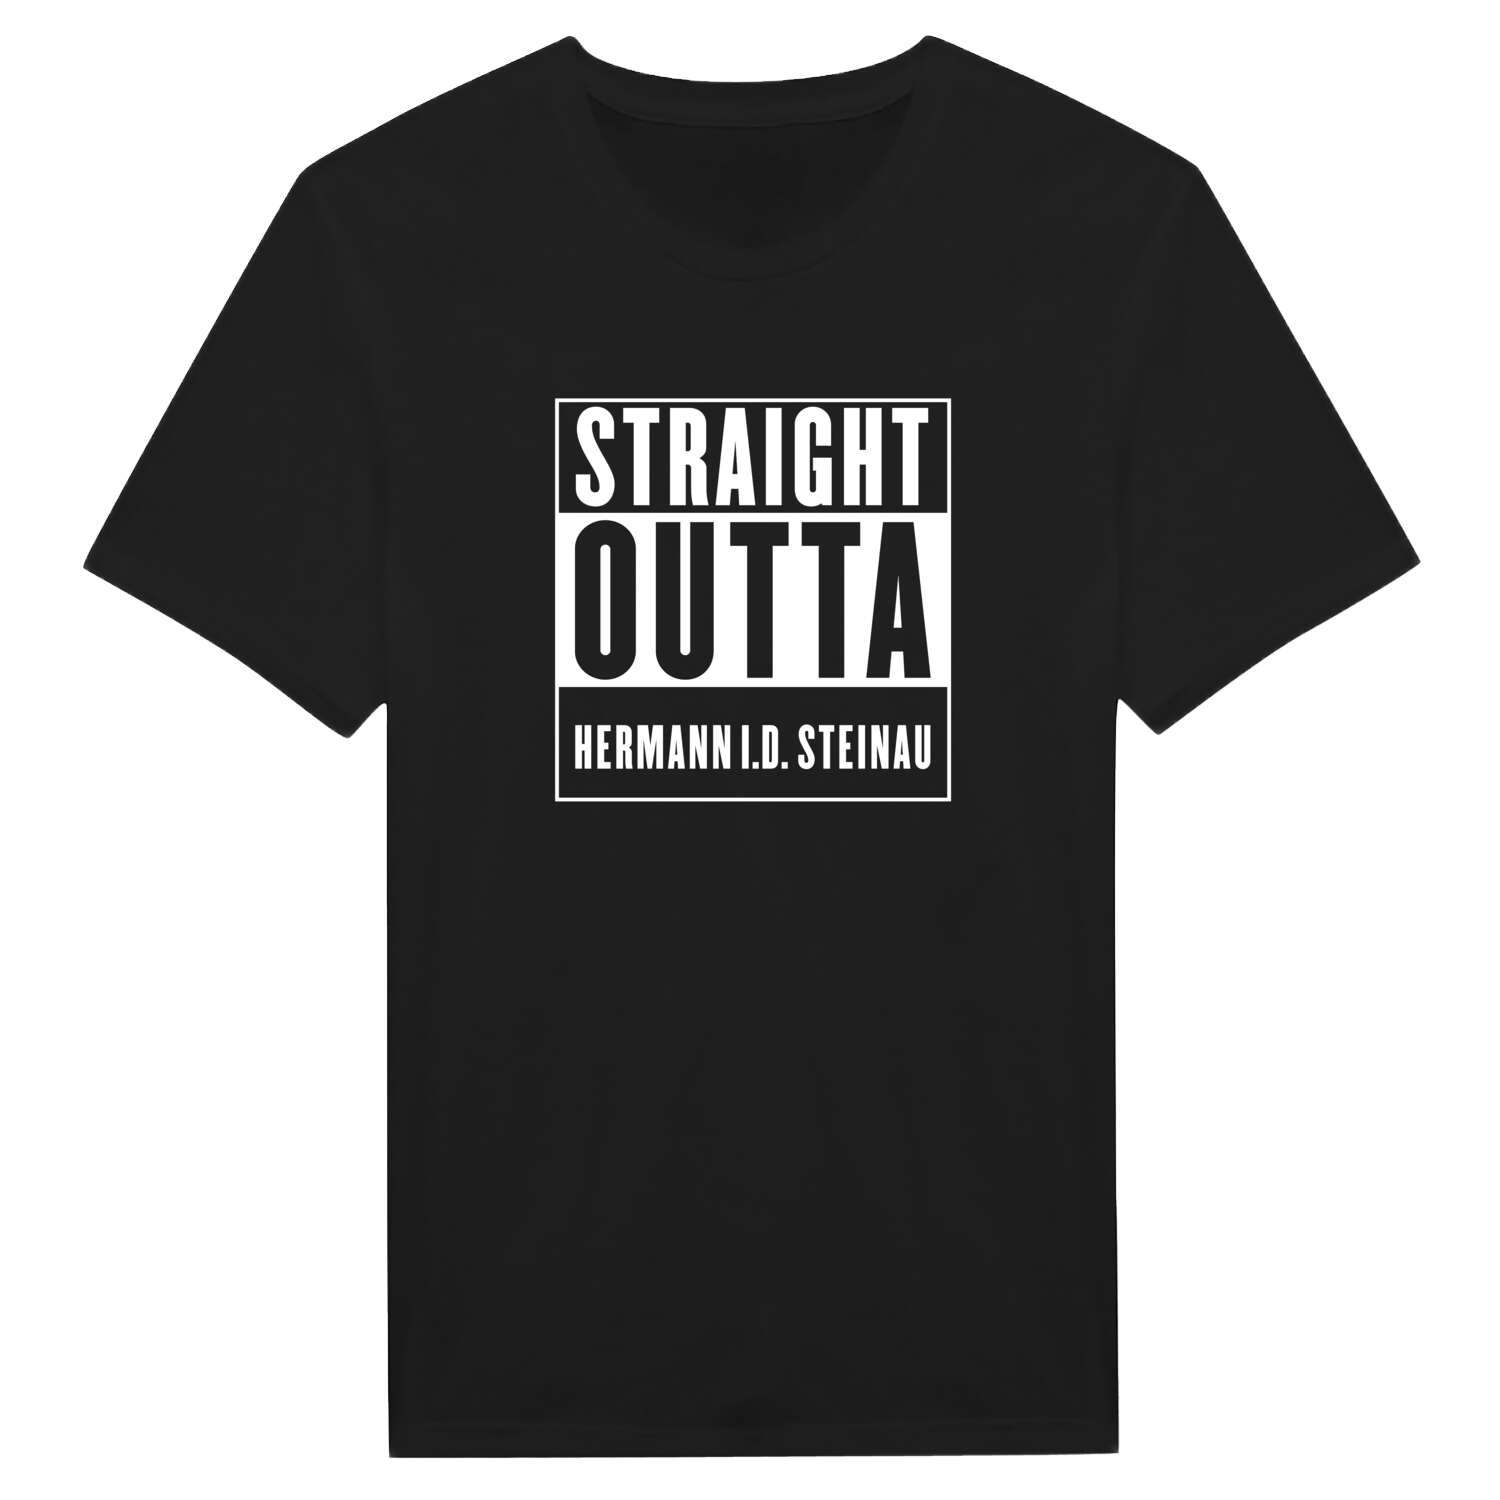 Hermann i.d. Steinau T-Shirt »Straight Outta«